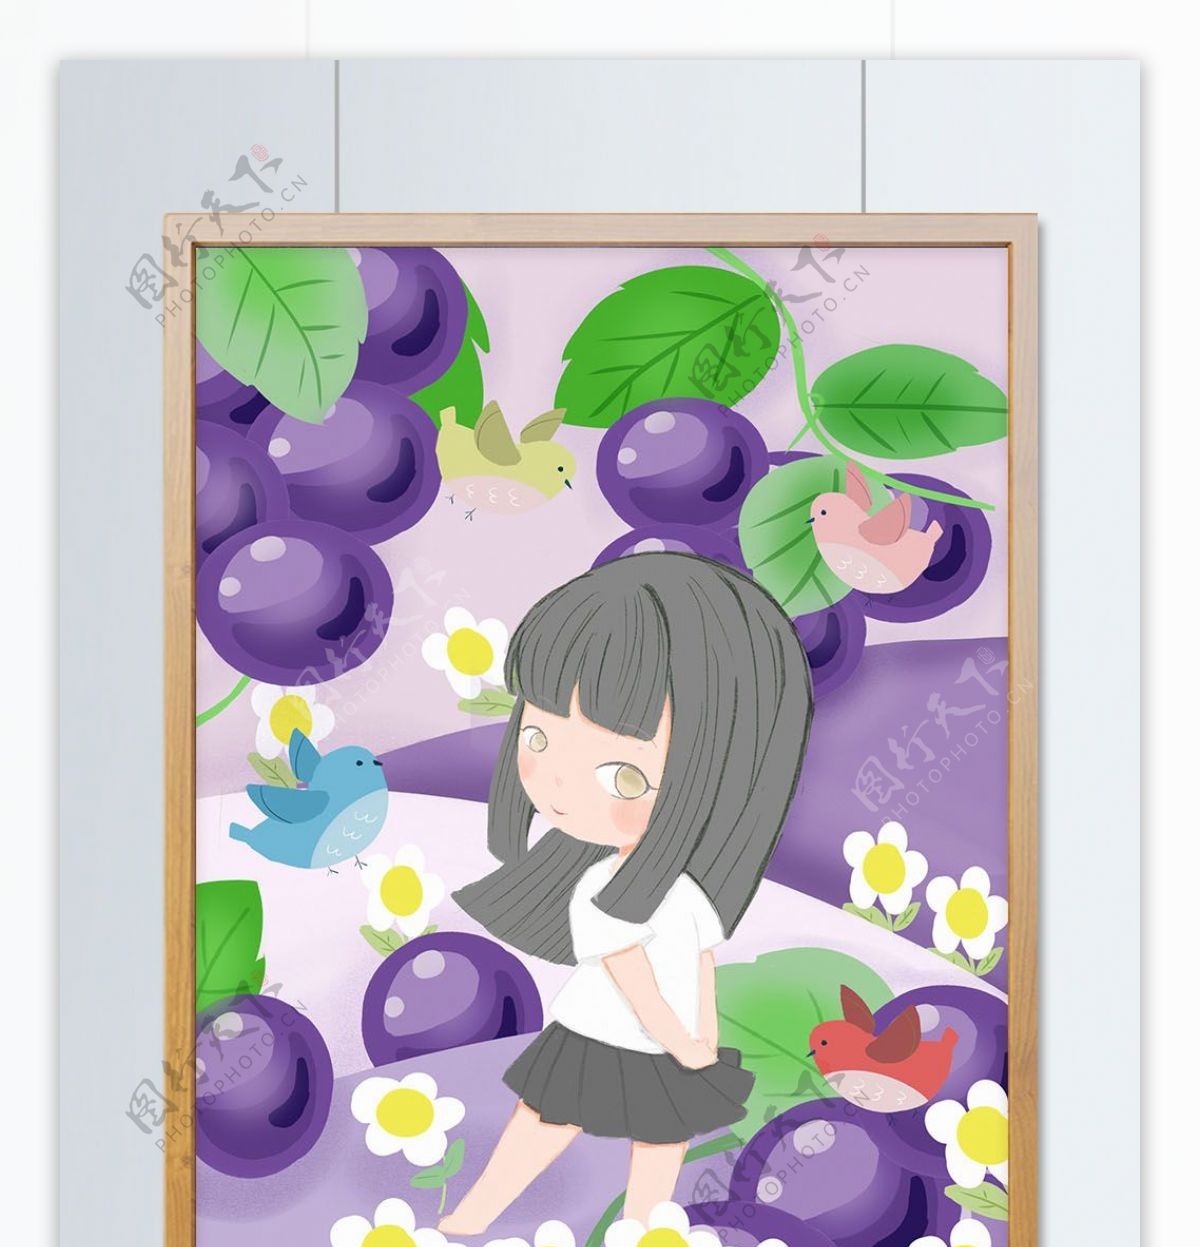 原创少女心水果插画在葡萄从中漫步女孩